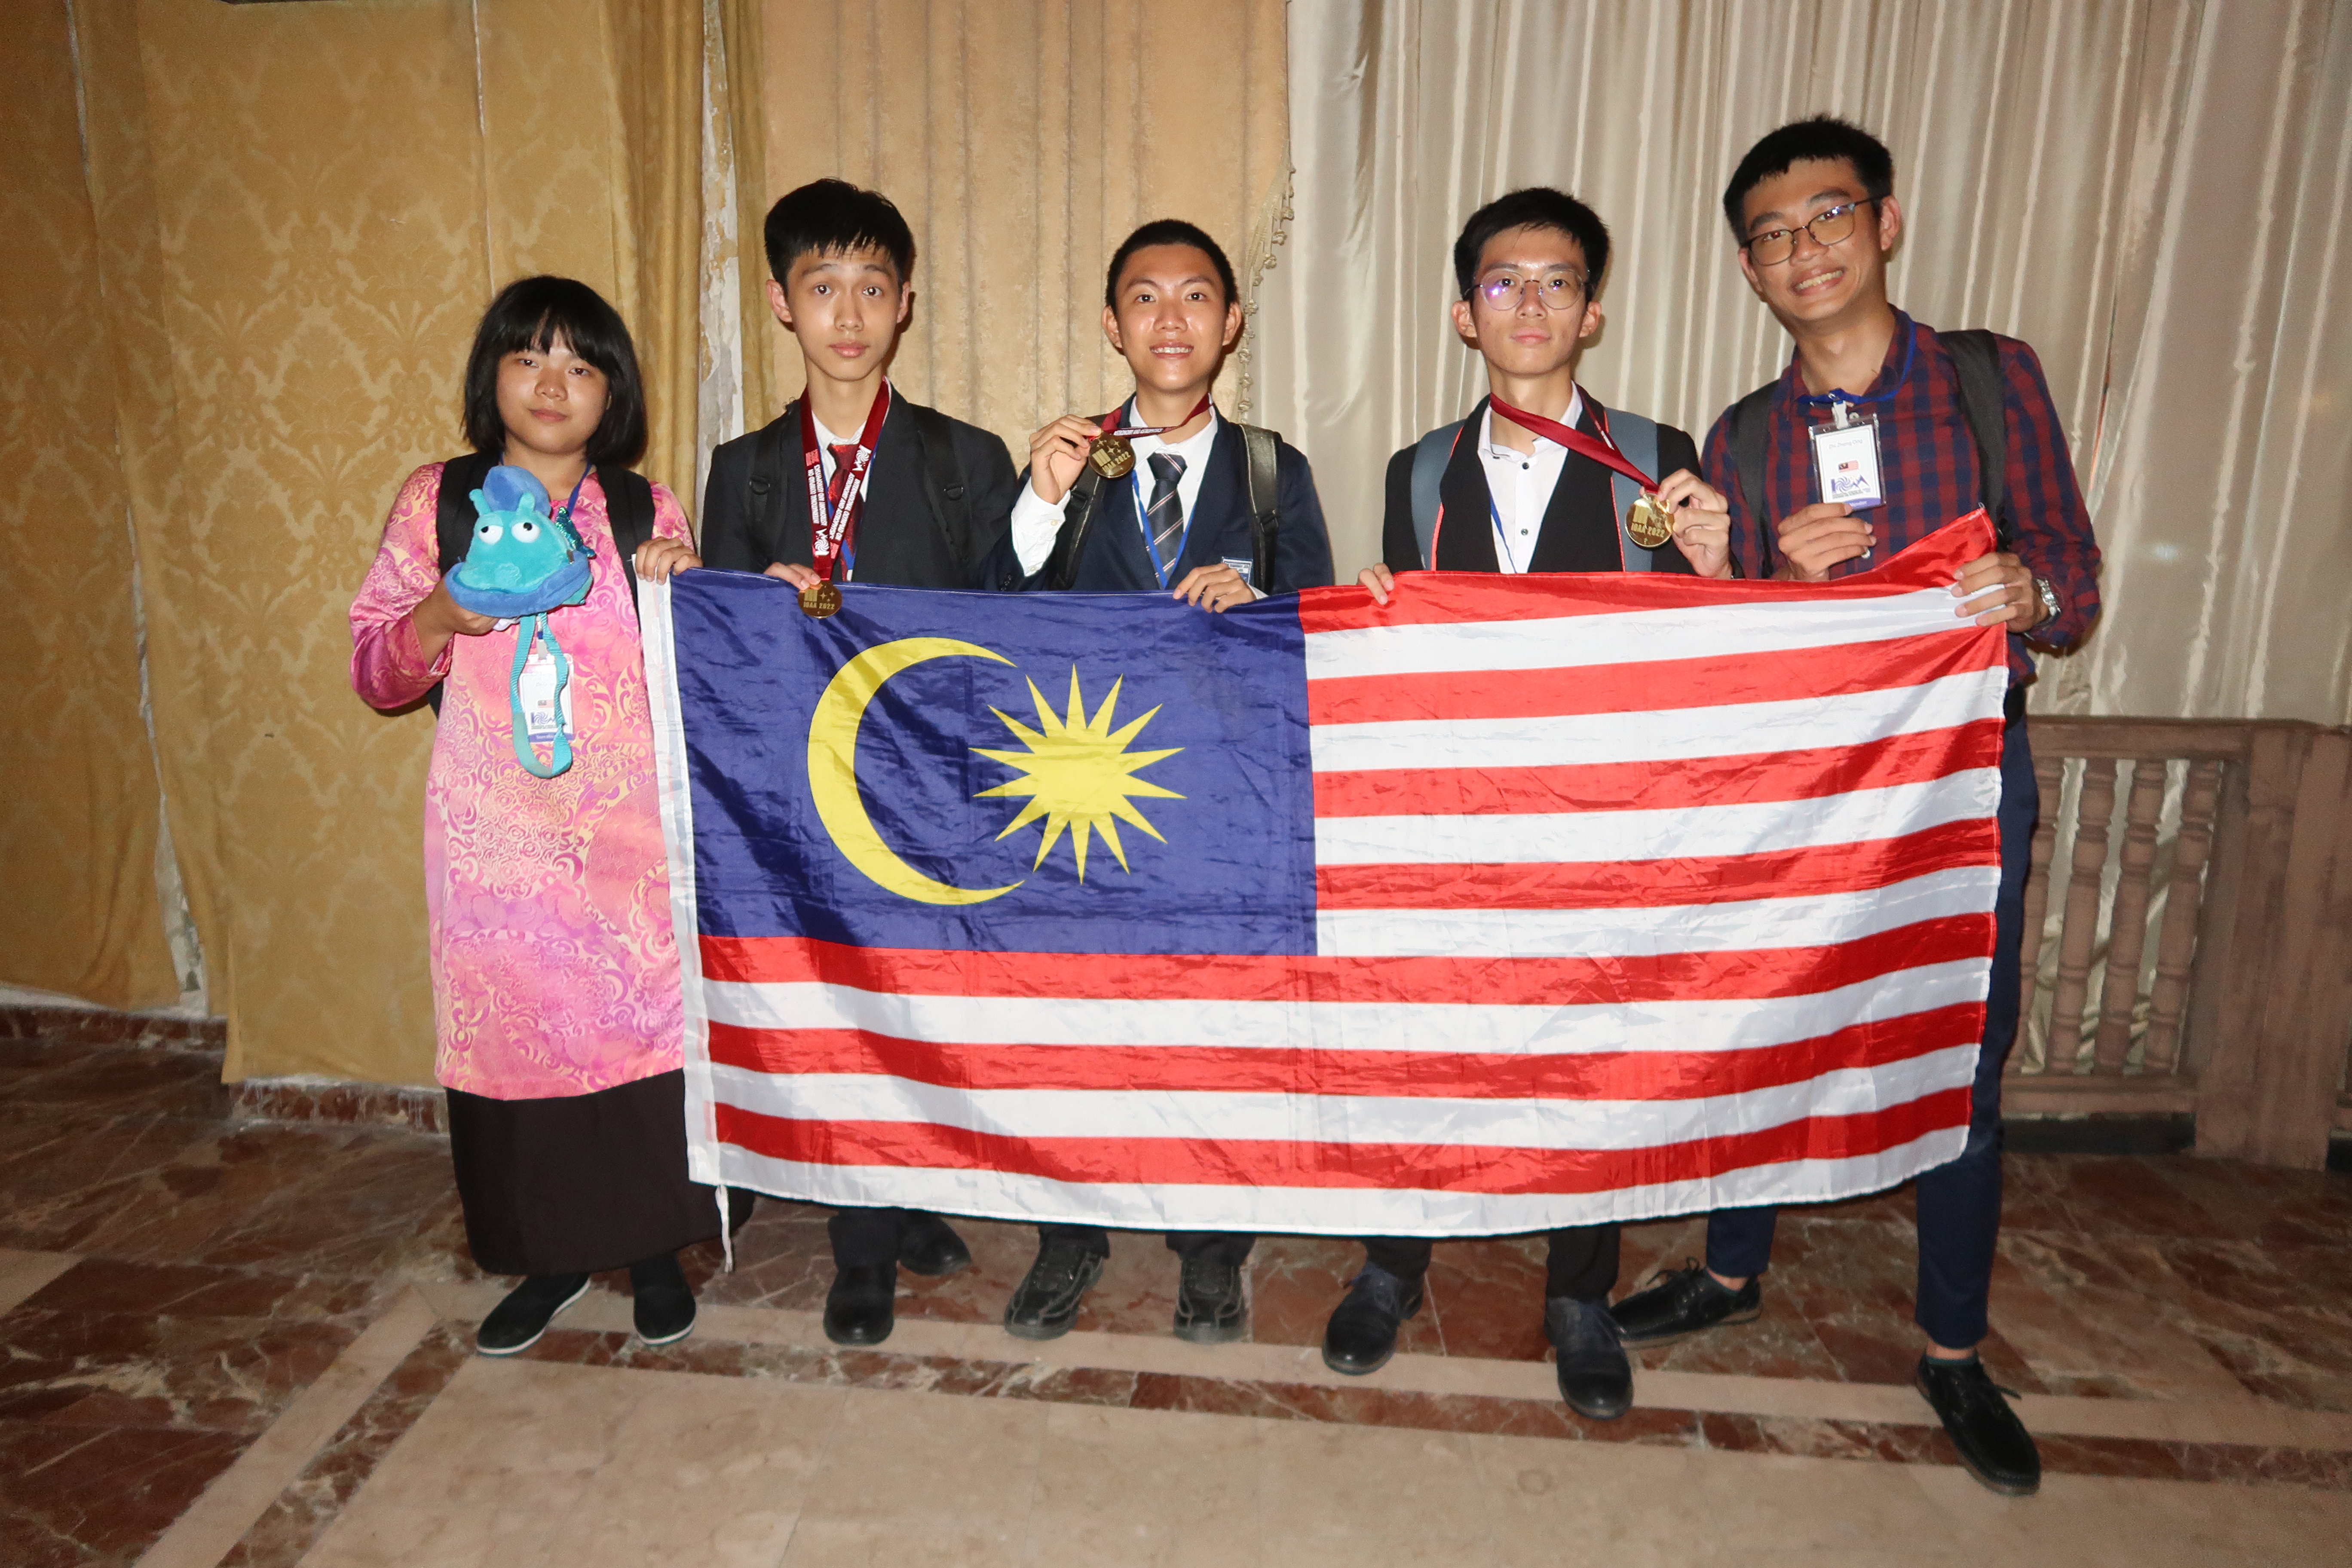 The Malaysia IOAA 2022 team